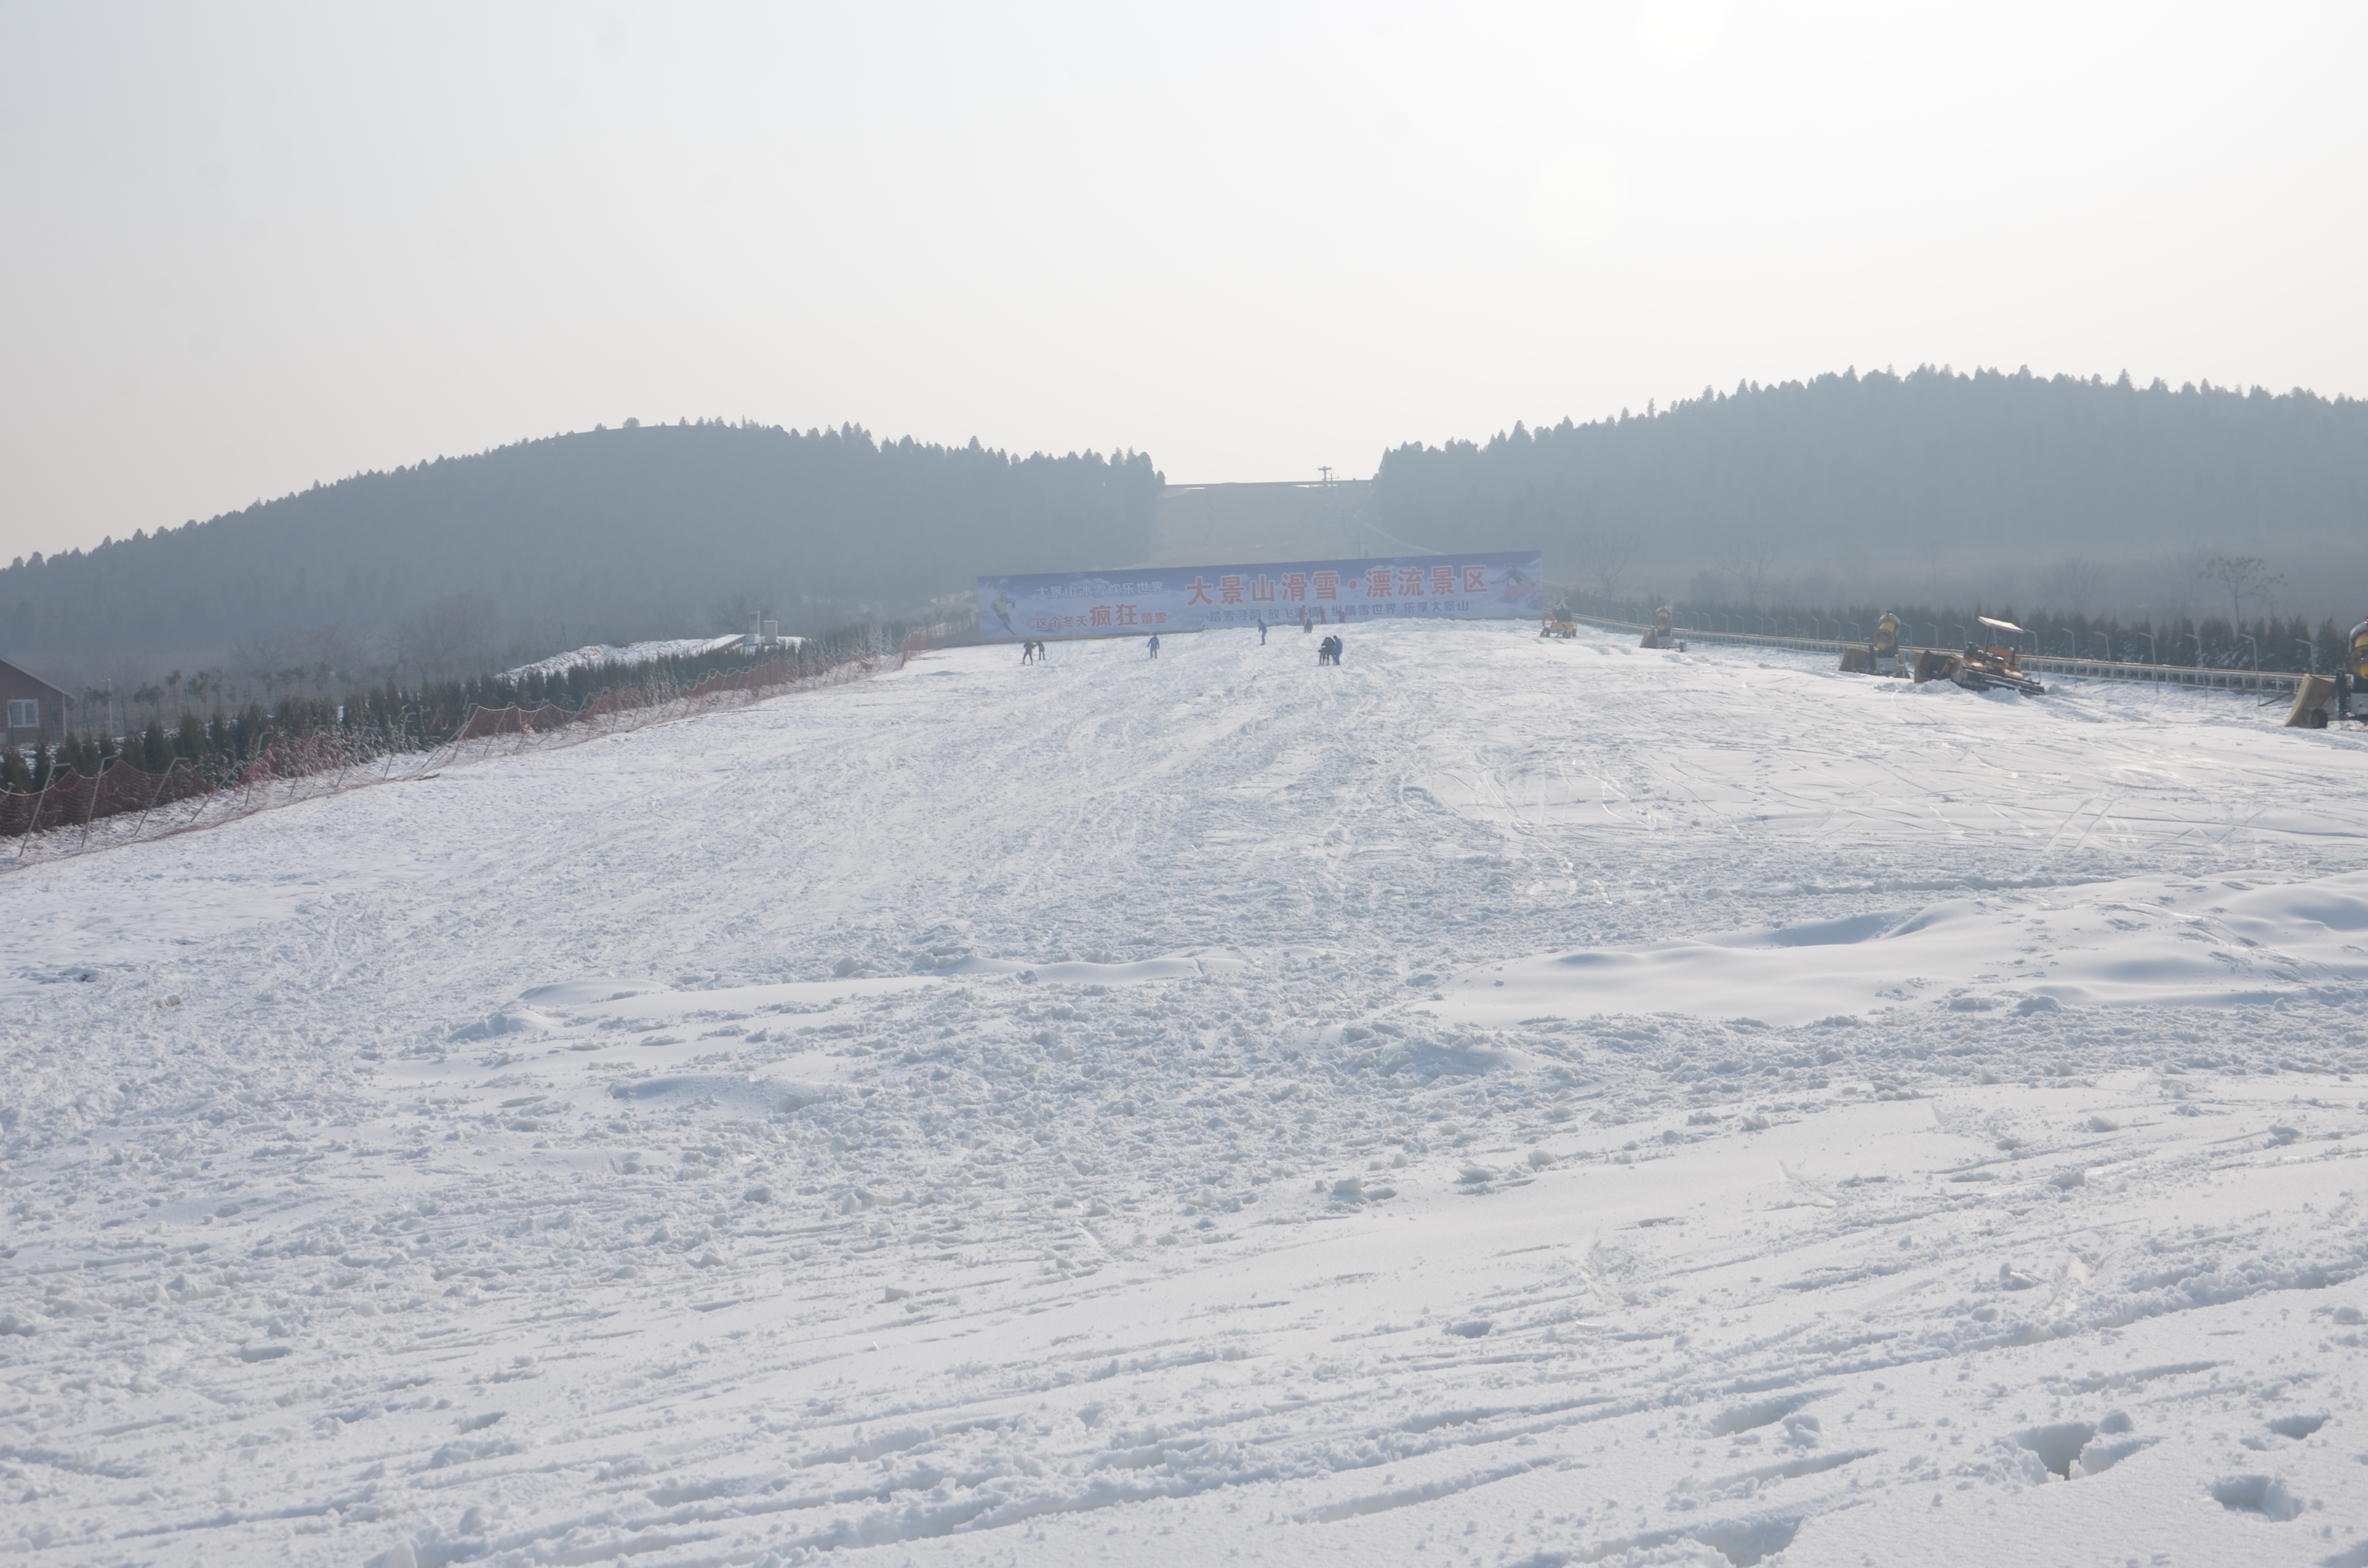 徐州月亮湾滑雪场图片